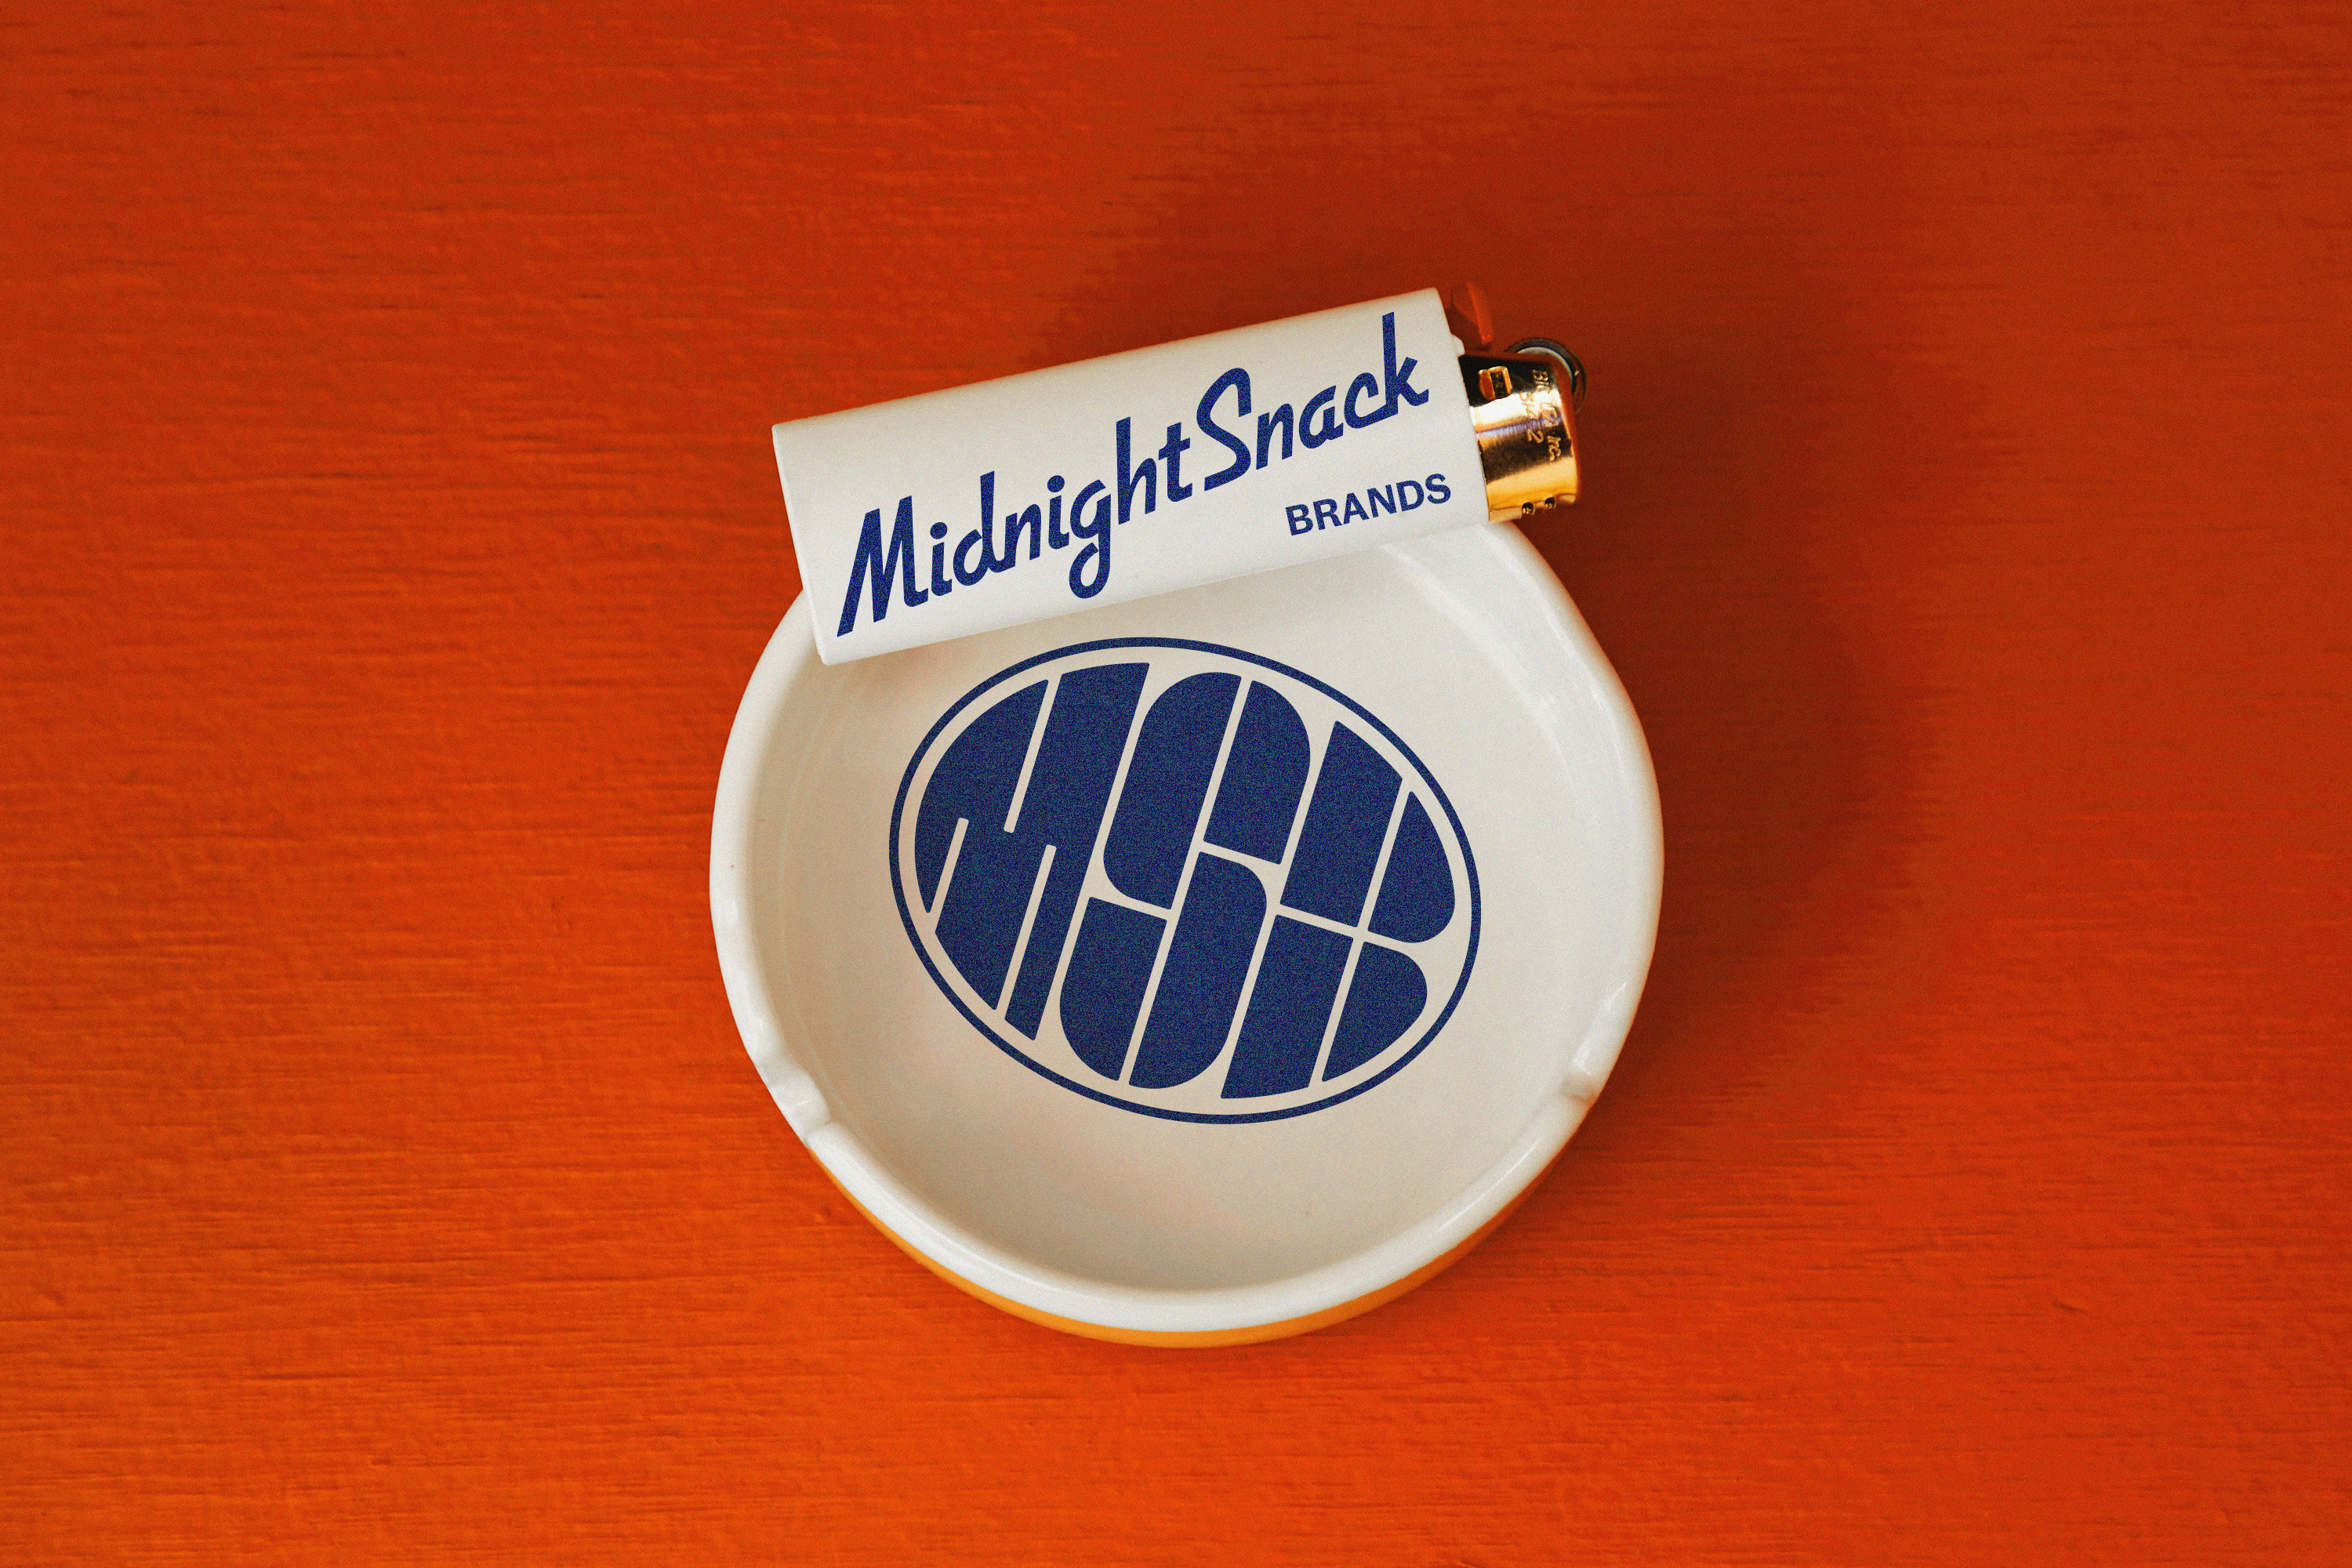 Midnight Snack Brands Lighter